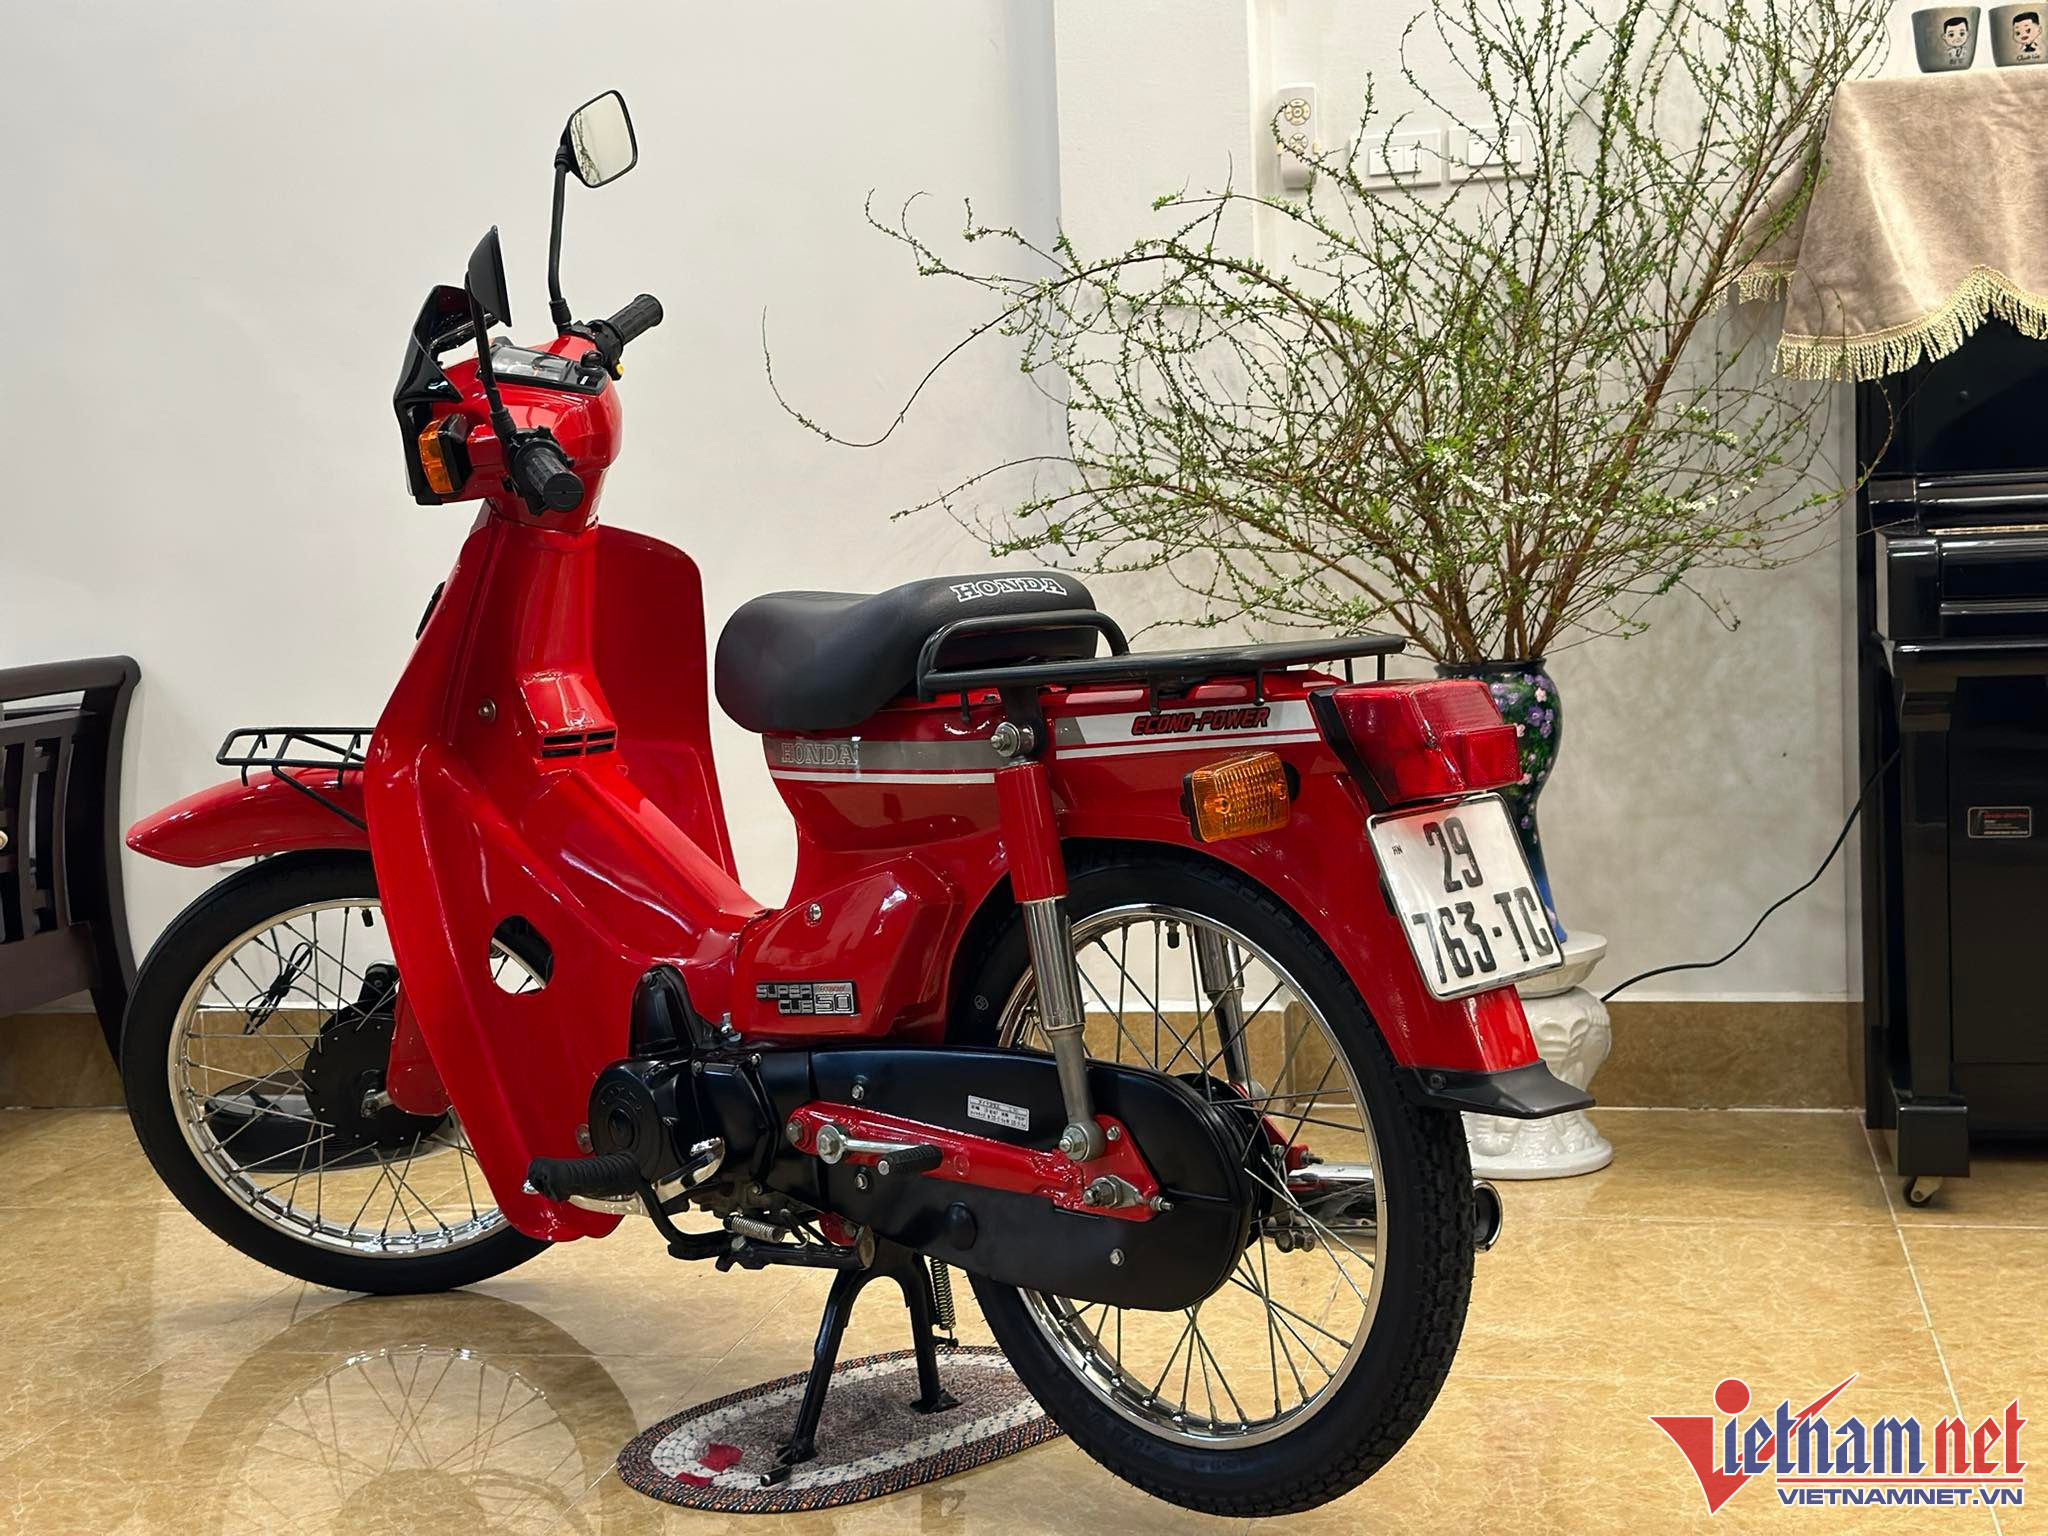 Honda Cub C50 “nữ hoàng đỏ” đời 1991 độc nhất Việt Nam